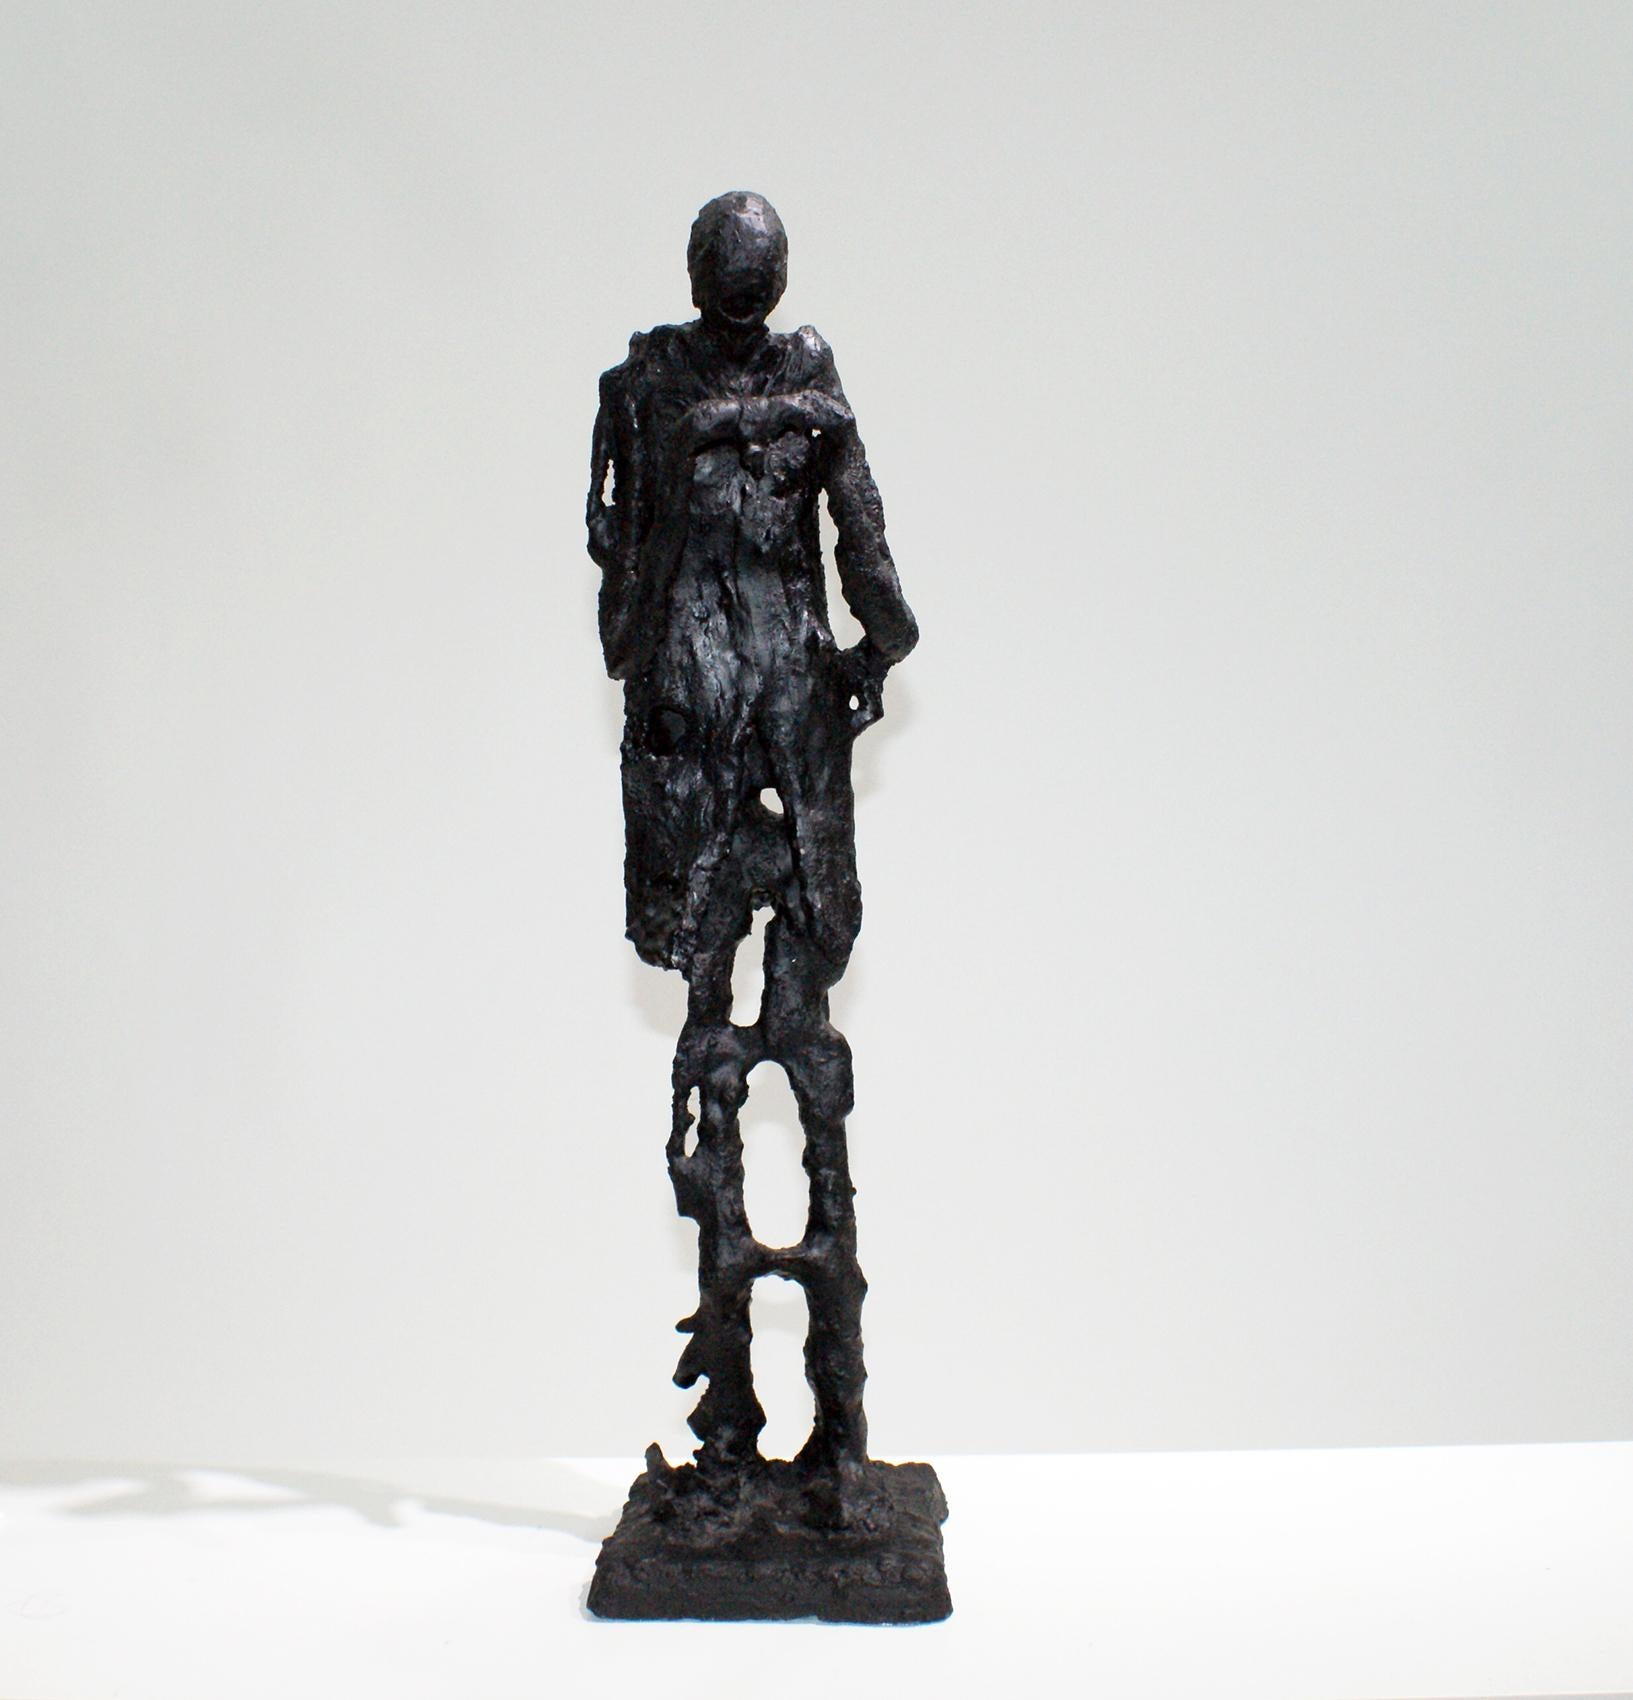 Skulptur des libanesischen Künstlers Antoine Berbery, bestehend aus schwarzem Gips, der einen stehenden Mann in schwarzer Farbe darstellt.
Antoine Berbery ist seit 1970 ein bekannter zeitgenössischer libanesischer Bildhauer. Seine Skulpturen sind